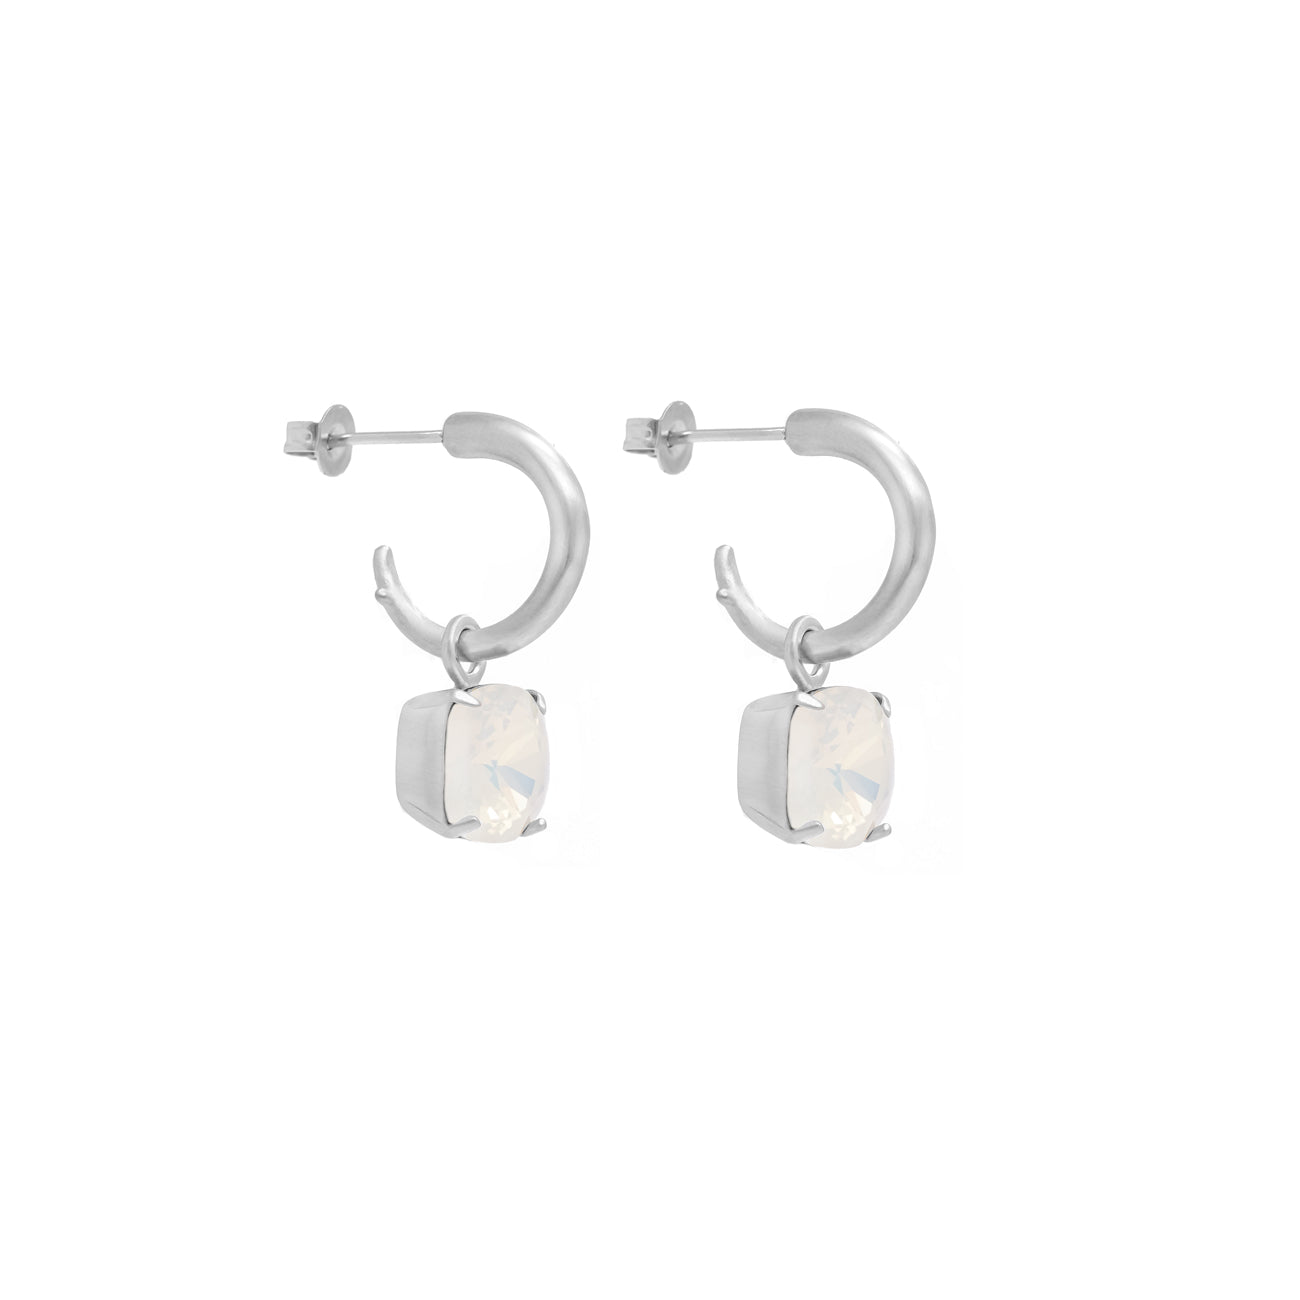 Carla Swarovski earrings - White opal